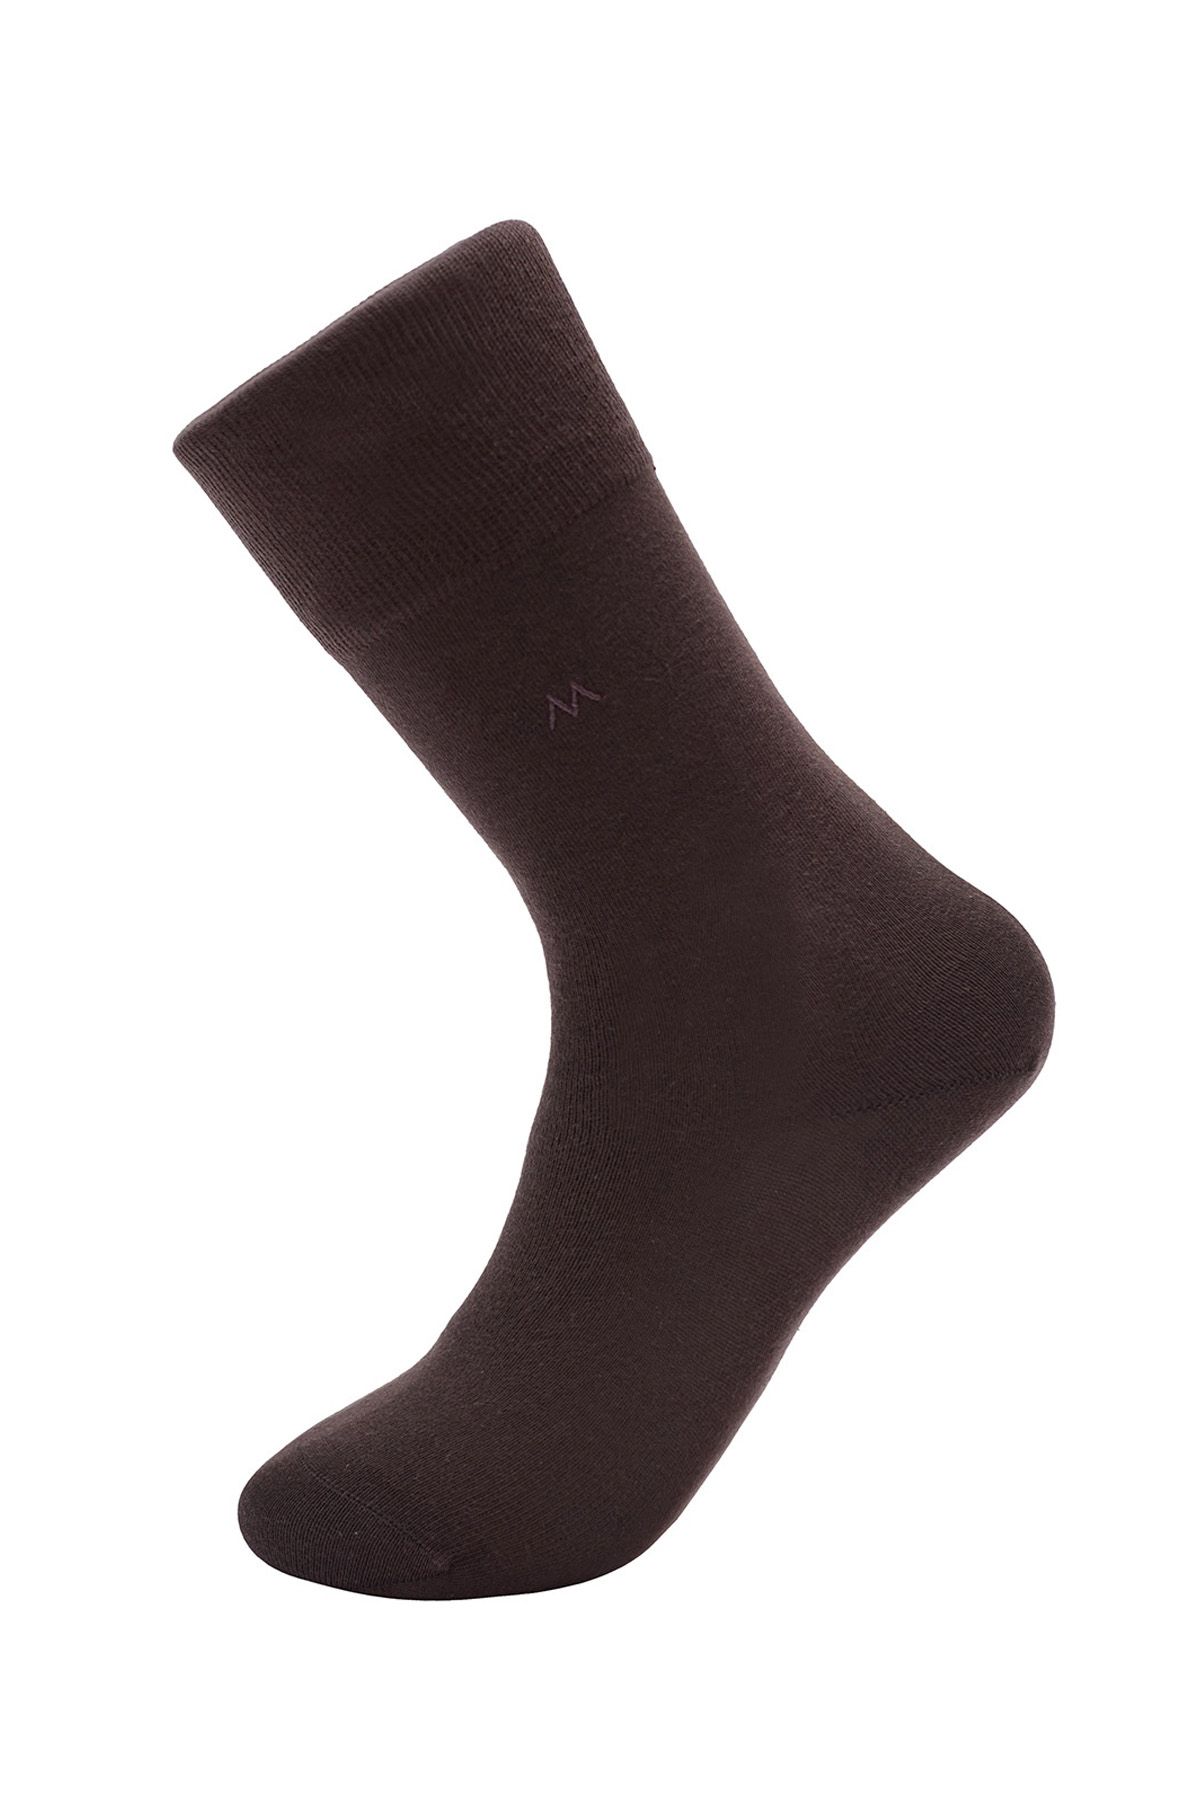 Hemington Koyu Kahverengi Pamuklu Çorap